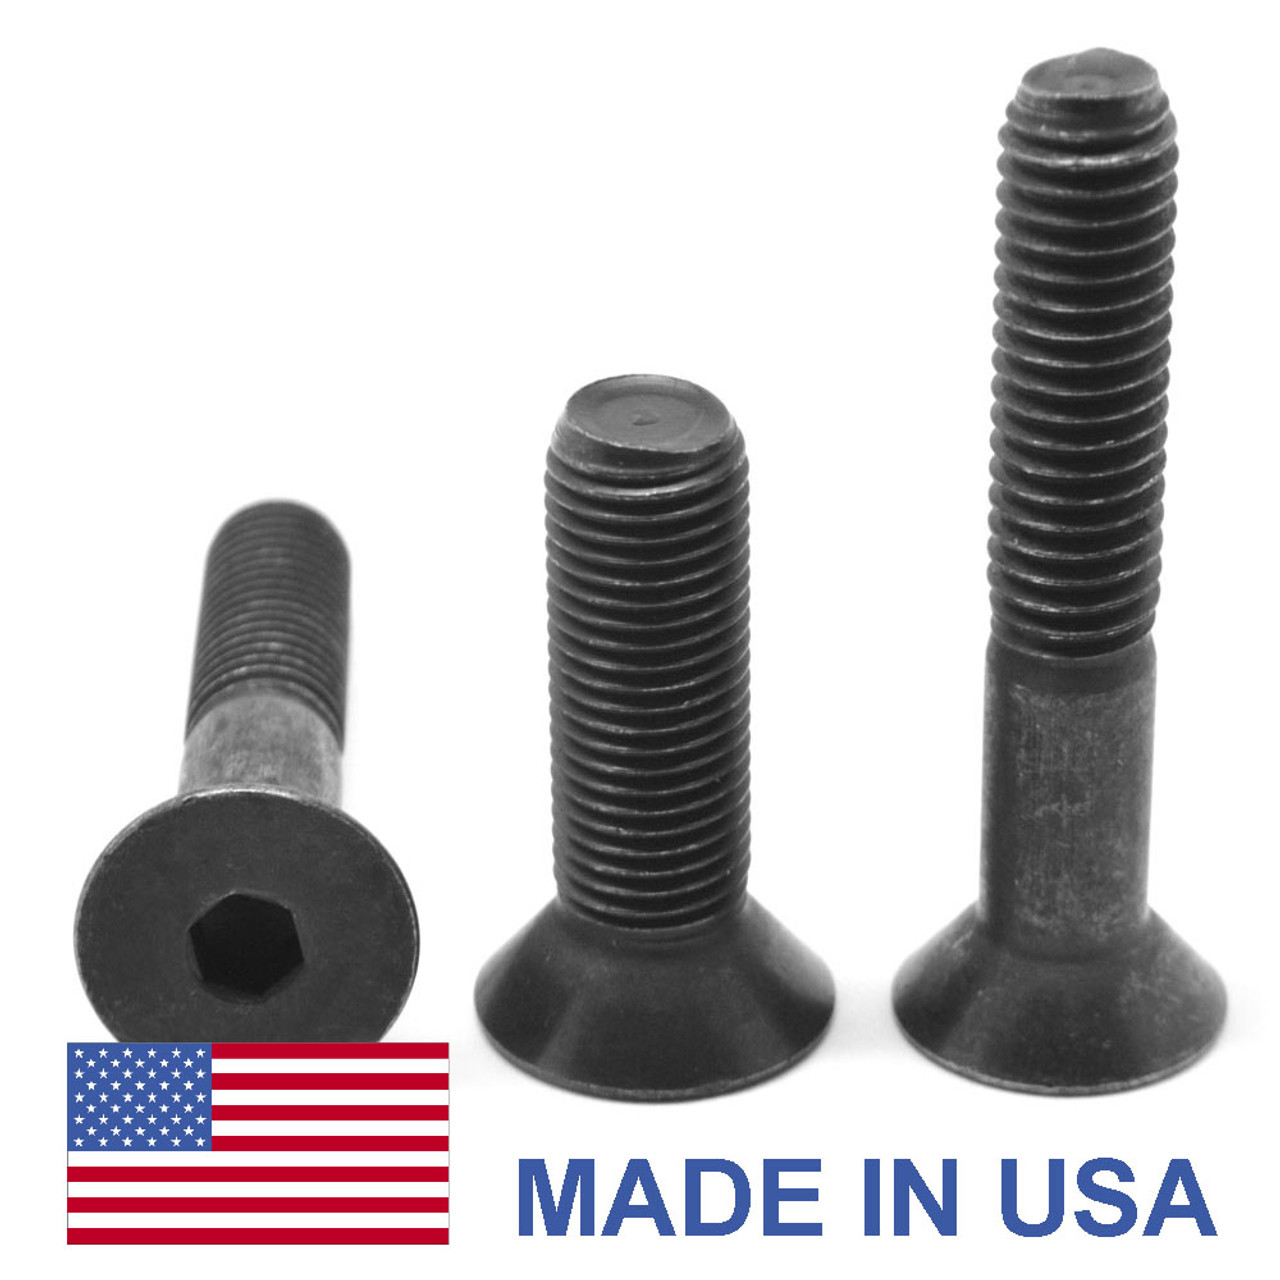 M8 x 1.25 x 25 MM Coarse Thread Socket Flat Head Cap Screw - USA Alloy Steel Thermal Black Oxide